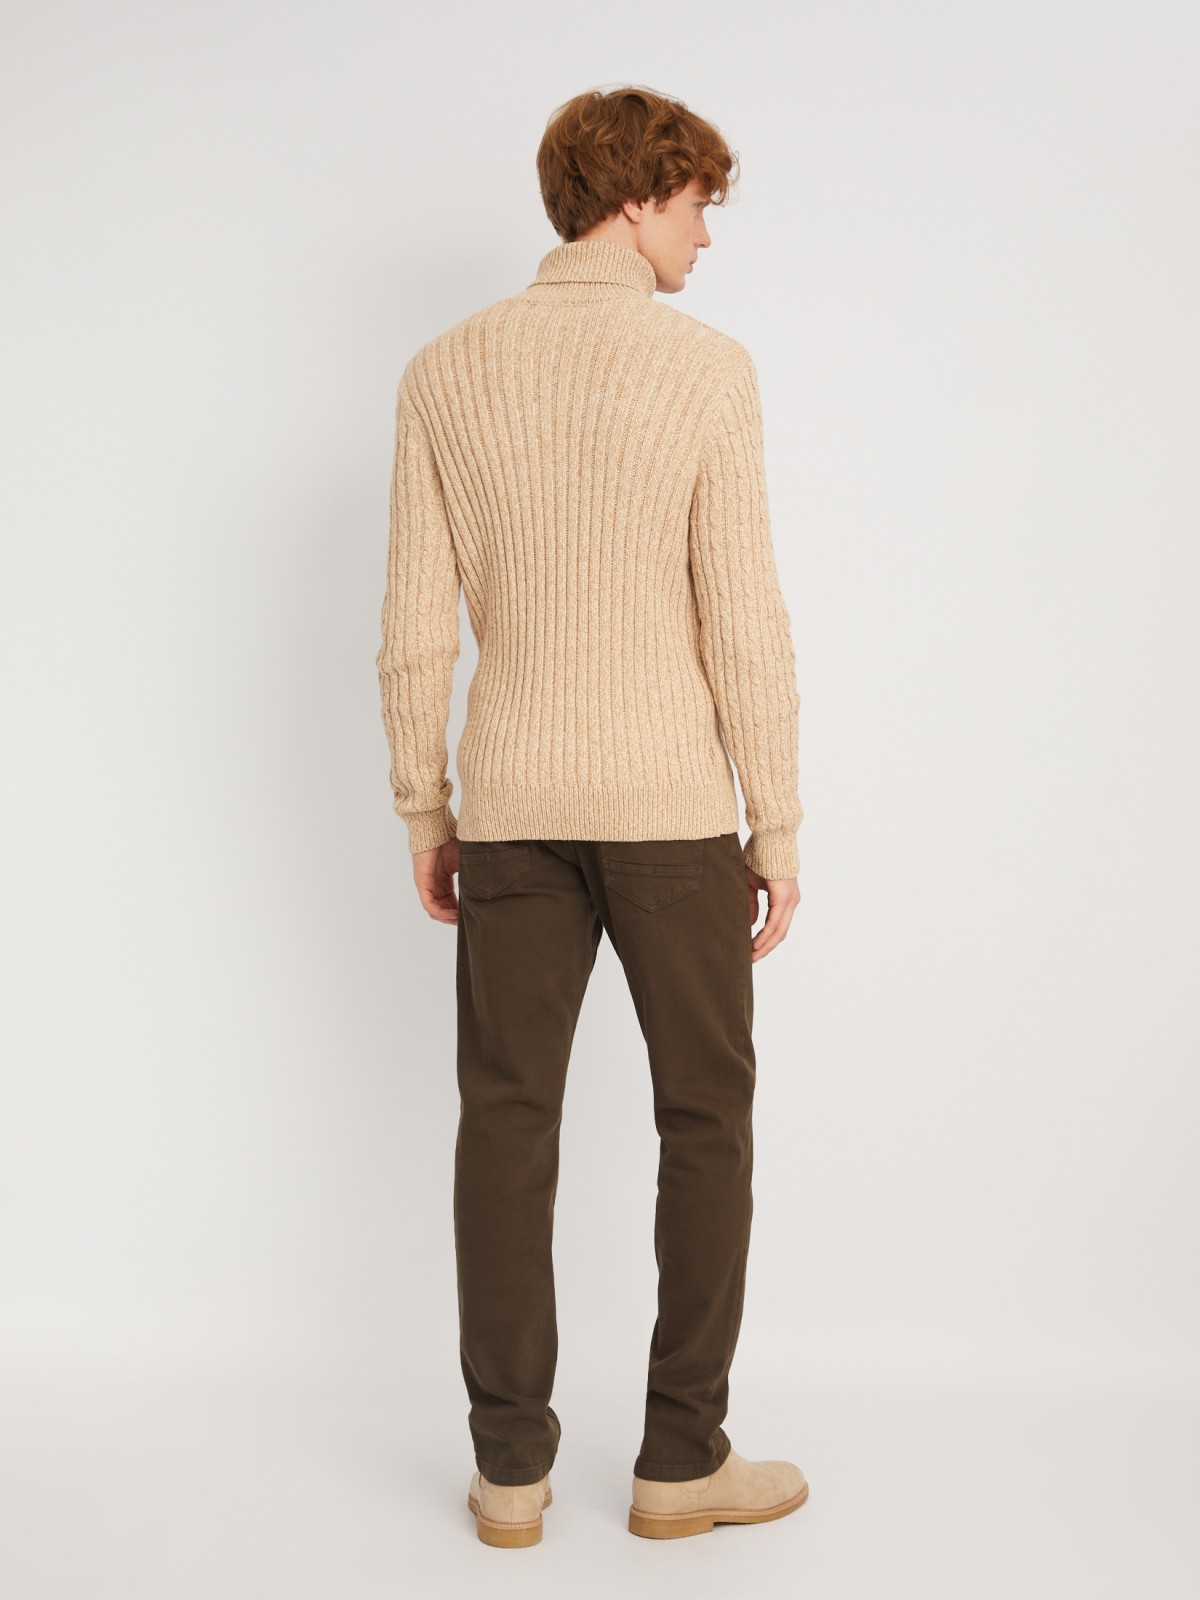 Вязаный свитер с фактурным узором косы zolla 013446165093, цвет коричневый, размер S - фото 6